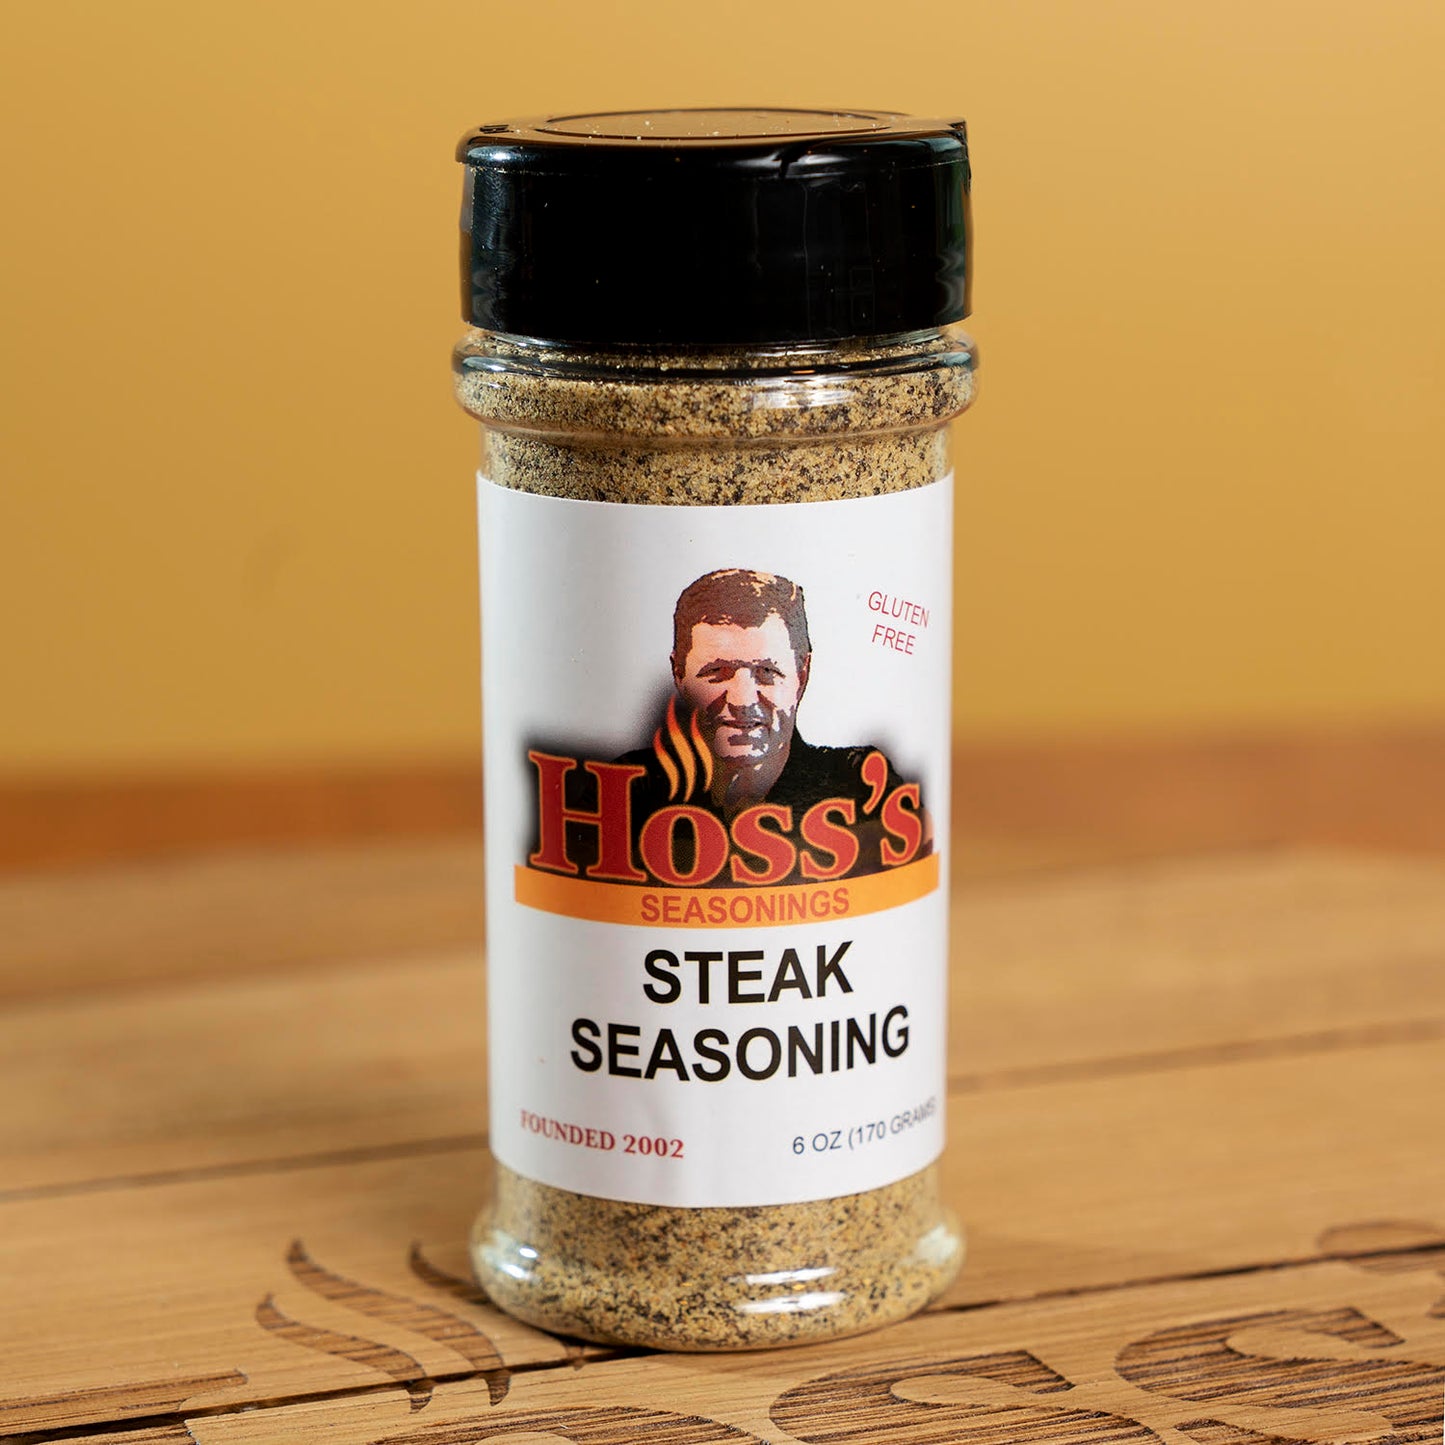 Hoss's Steak Seasoning